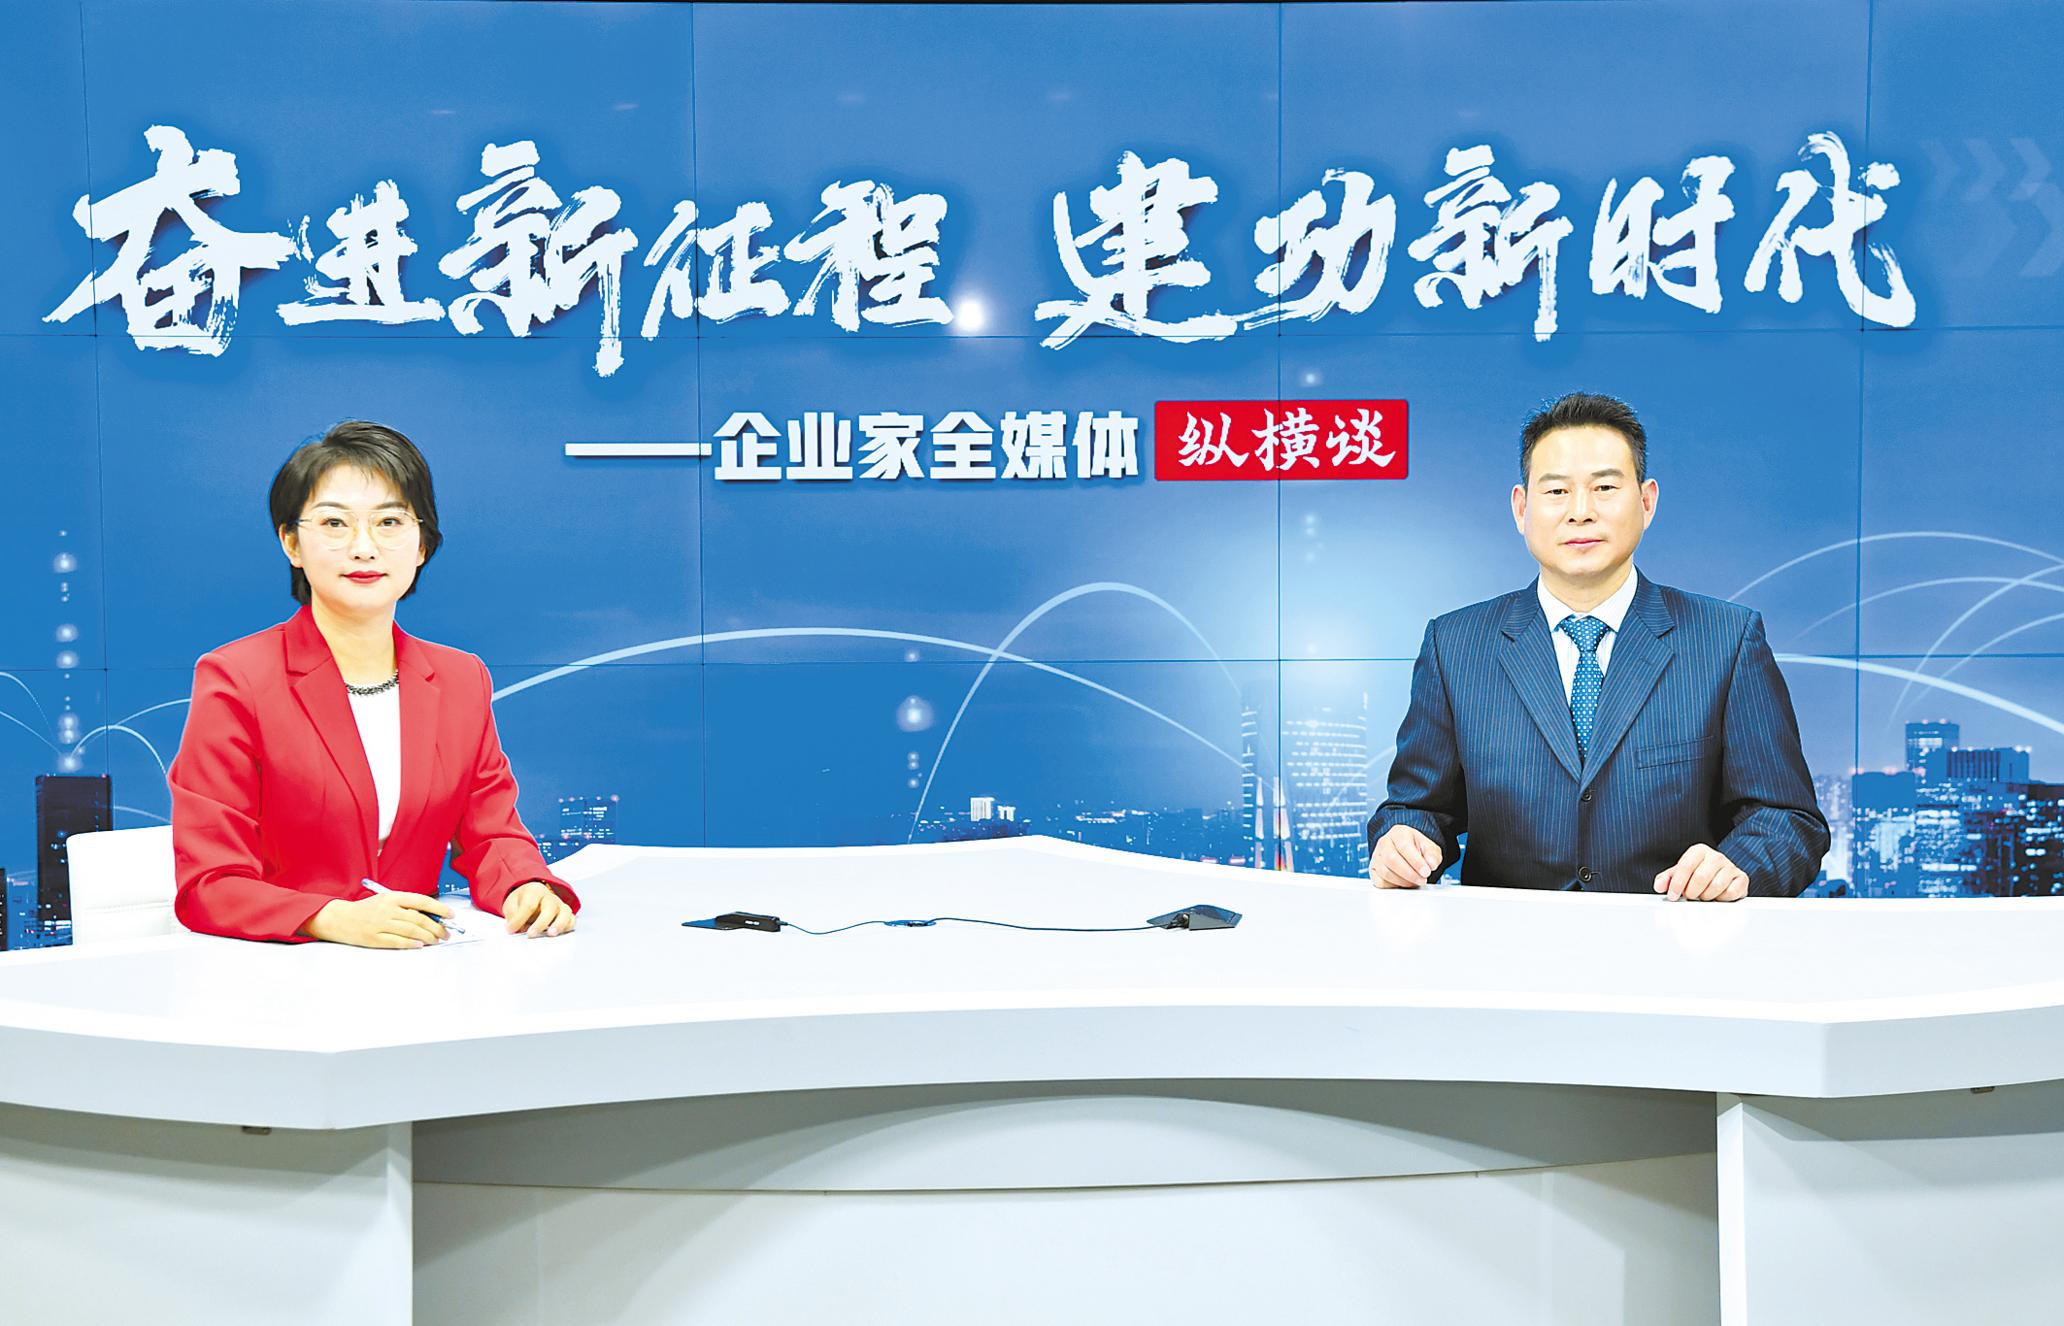 大力电工襄阳股份有限公司董事长、总裁高文广―― 锚定创新30年坐热“冷板凳”